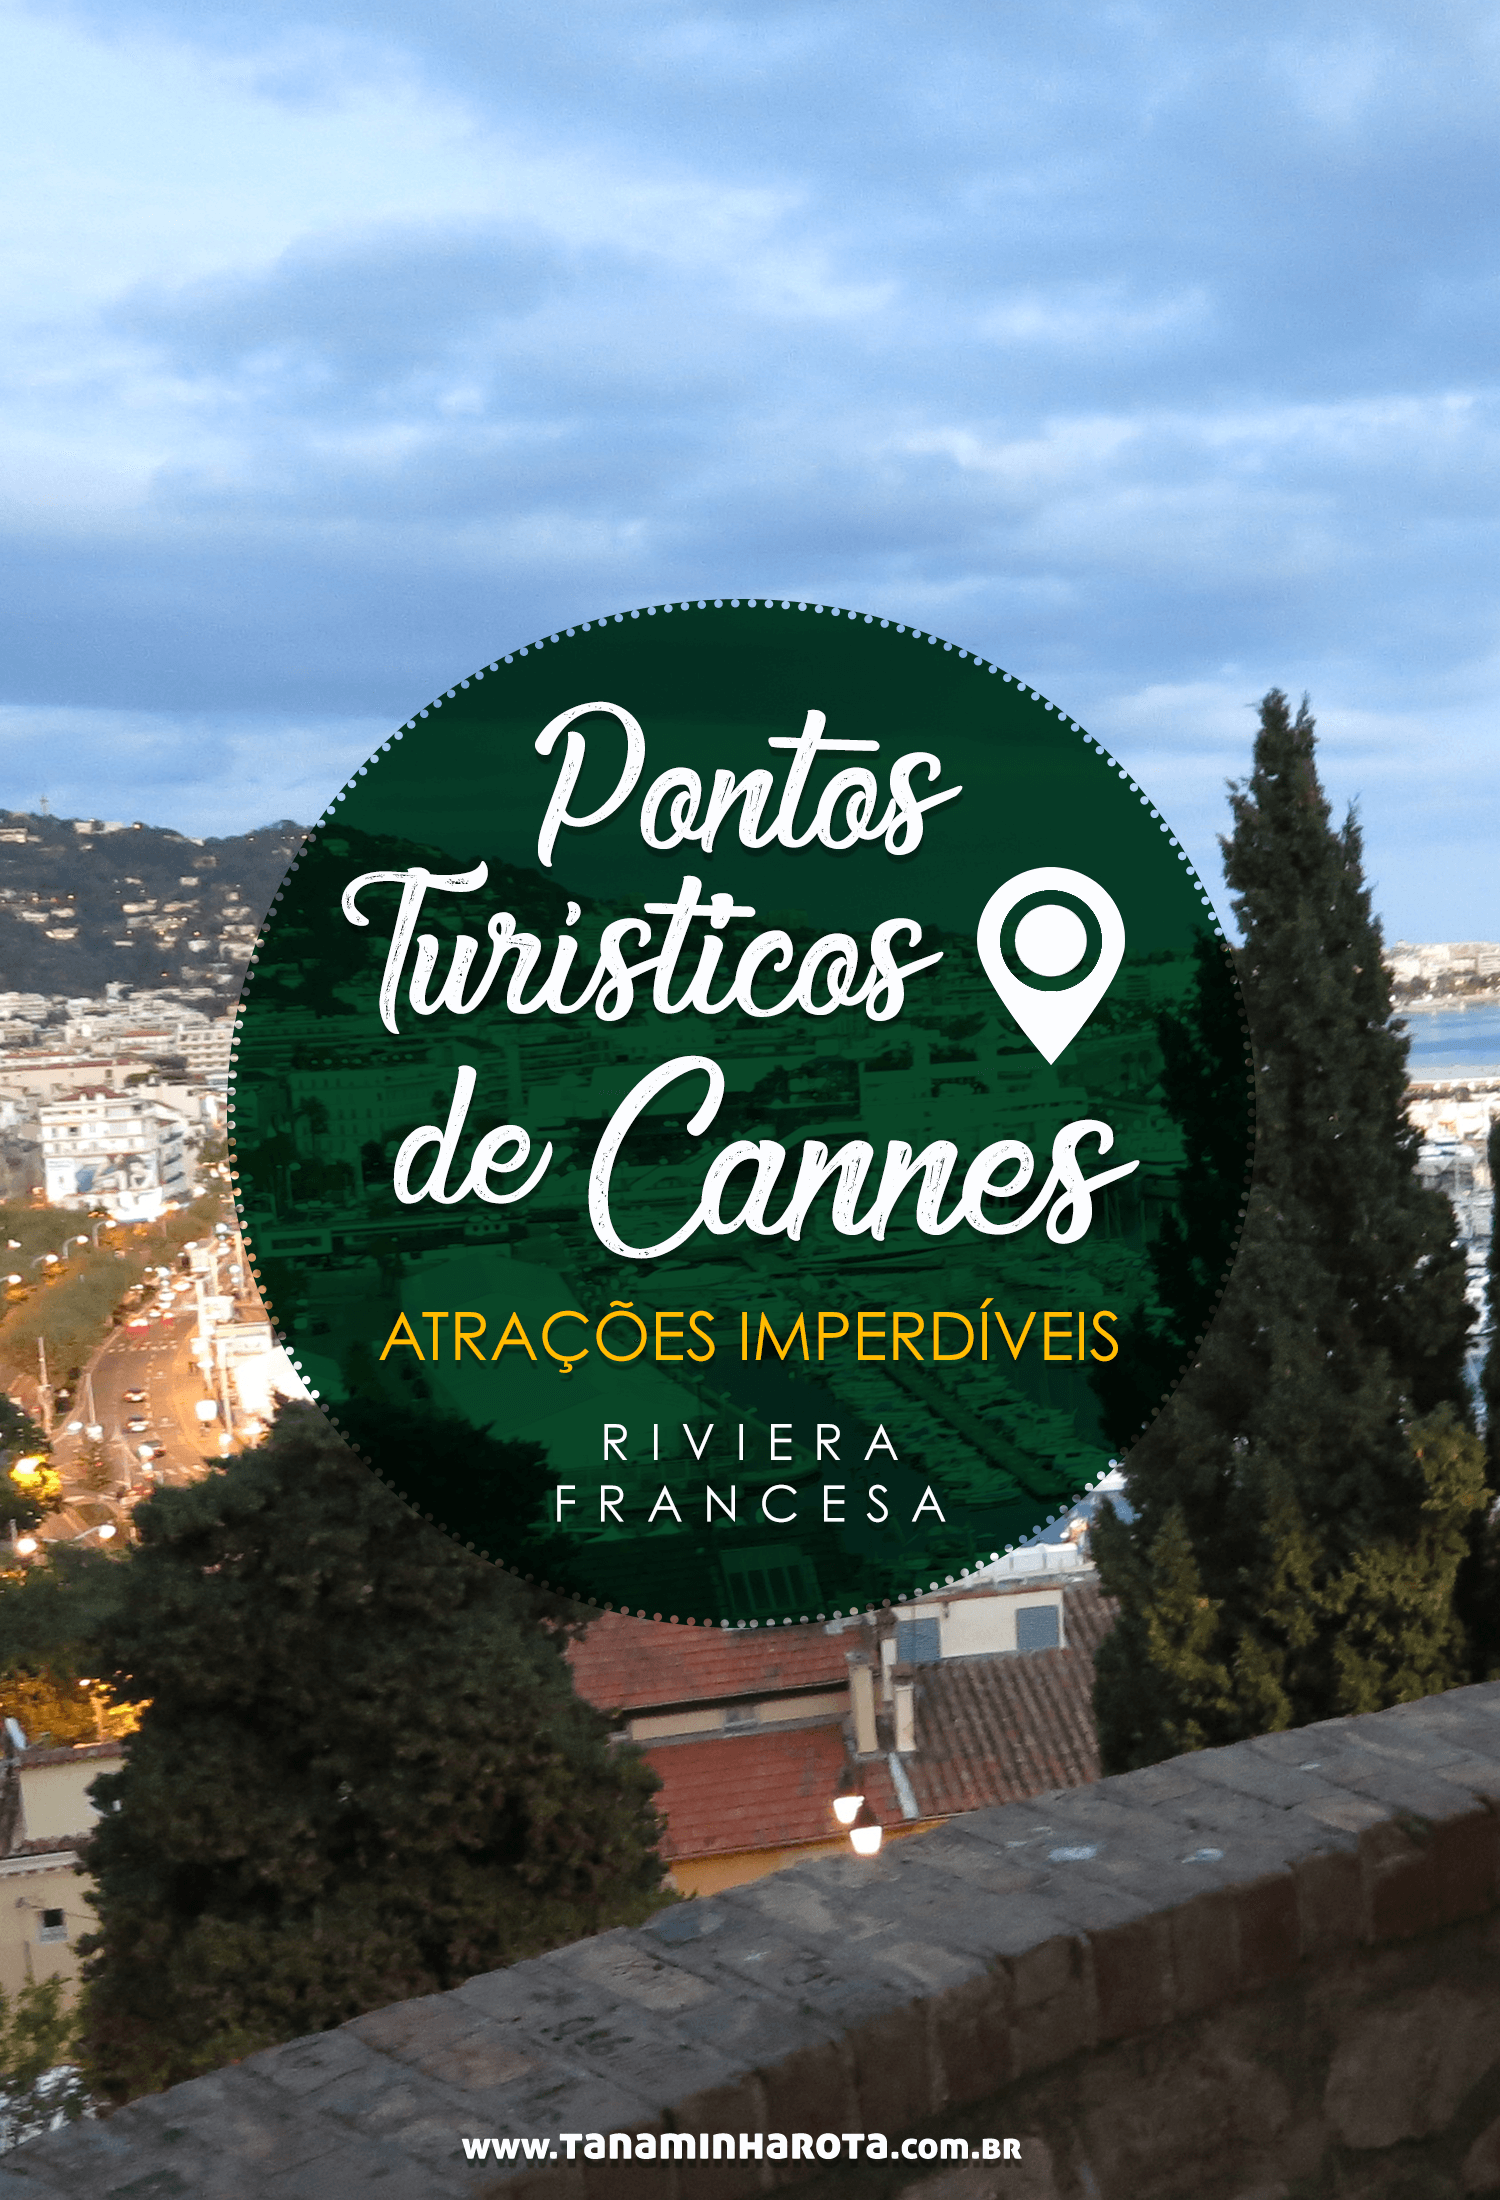 Planejando uma viagem para a Riviera Francesa? Então confira nesse post quais são os principais pontos turísticos de Cannes! #cannes #rivierafrancesa #frança #viagem #europa